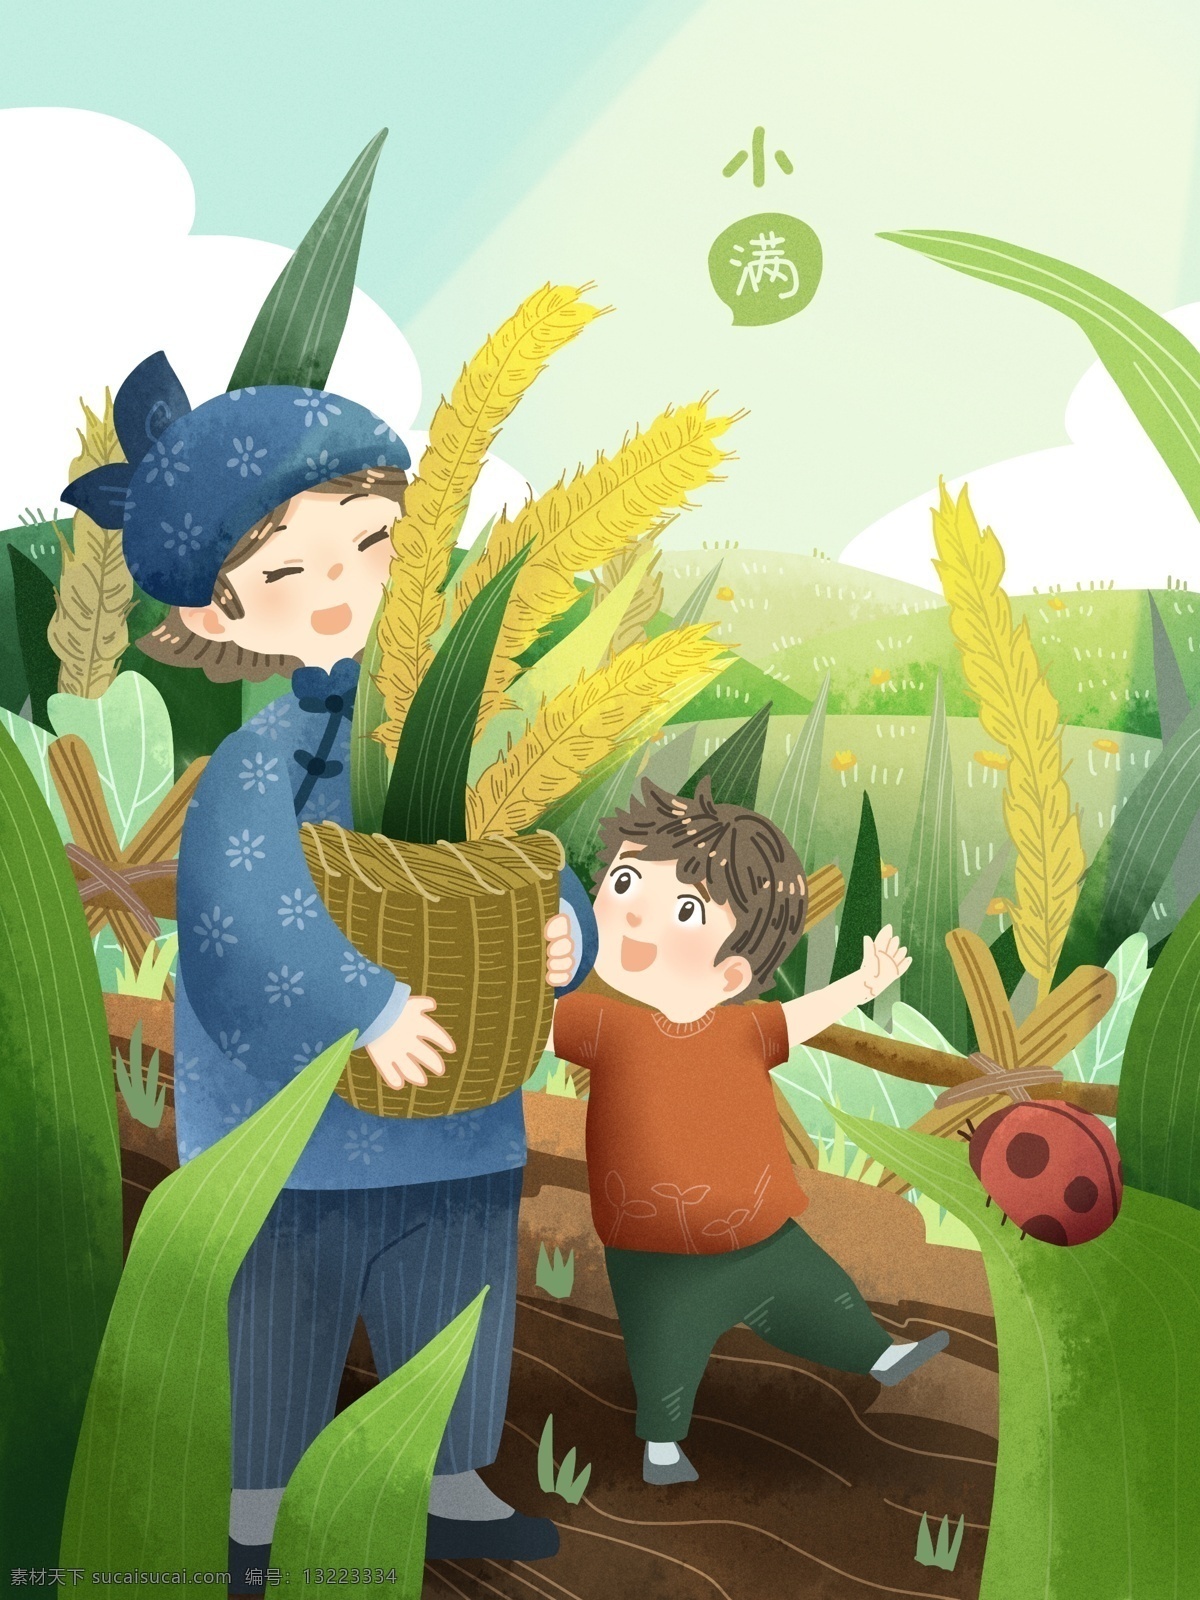 节气 小满 孩子 妈妈 收割 小麦 开心 幸福 瓢虫 麦穗 清新 植物 虫 农家